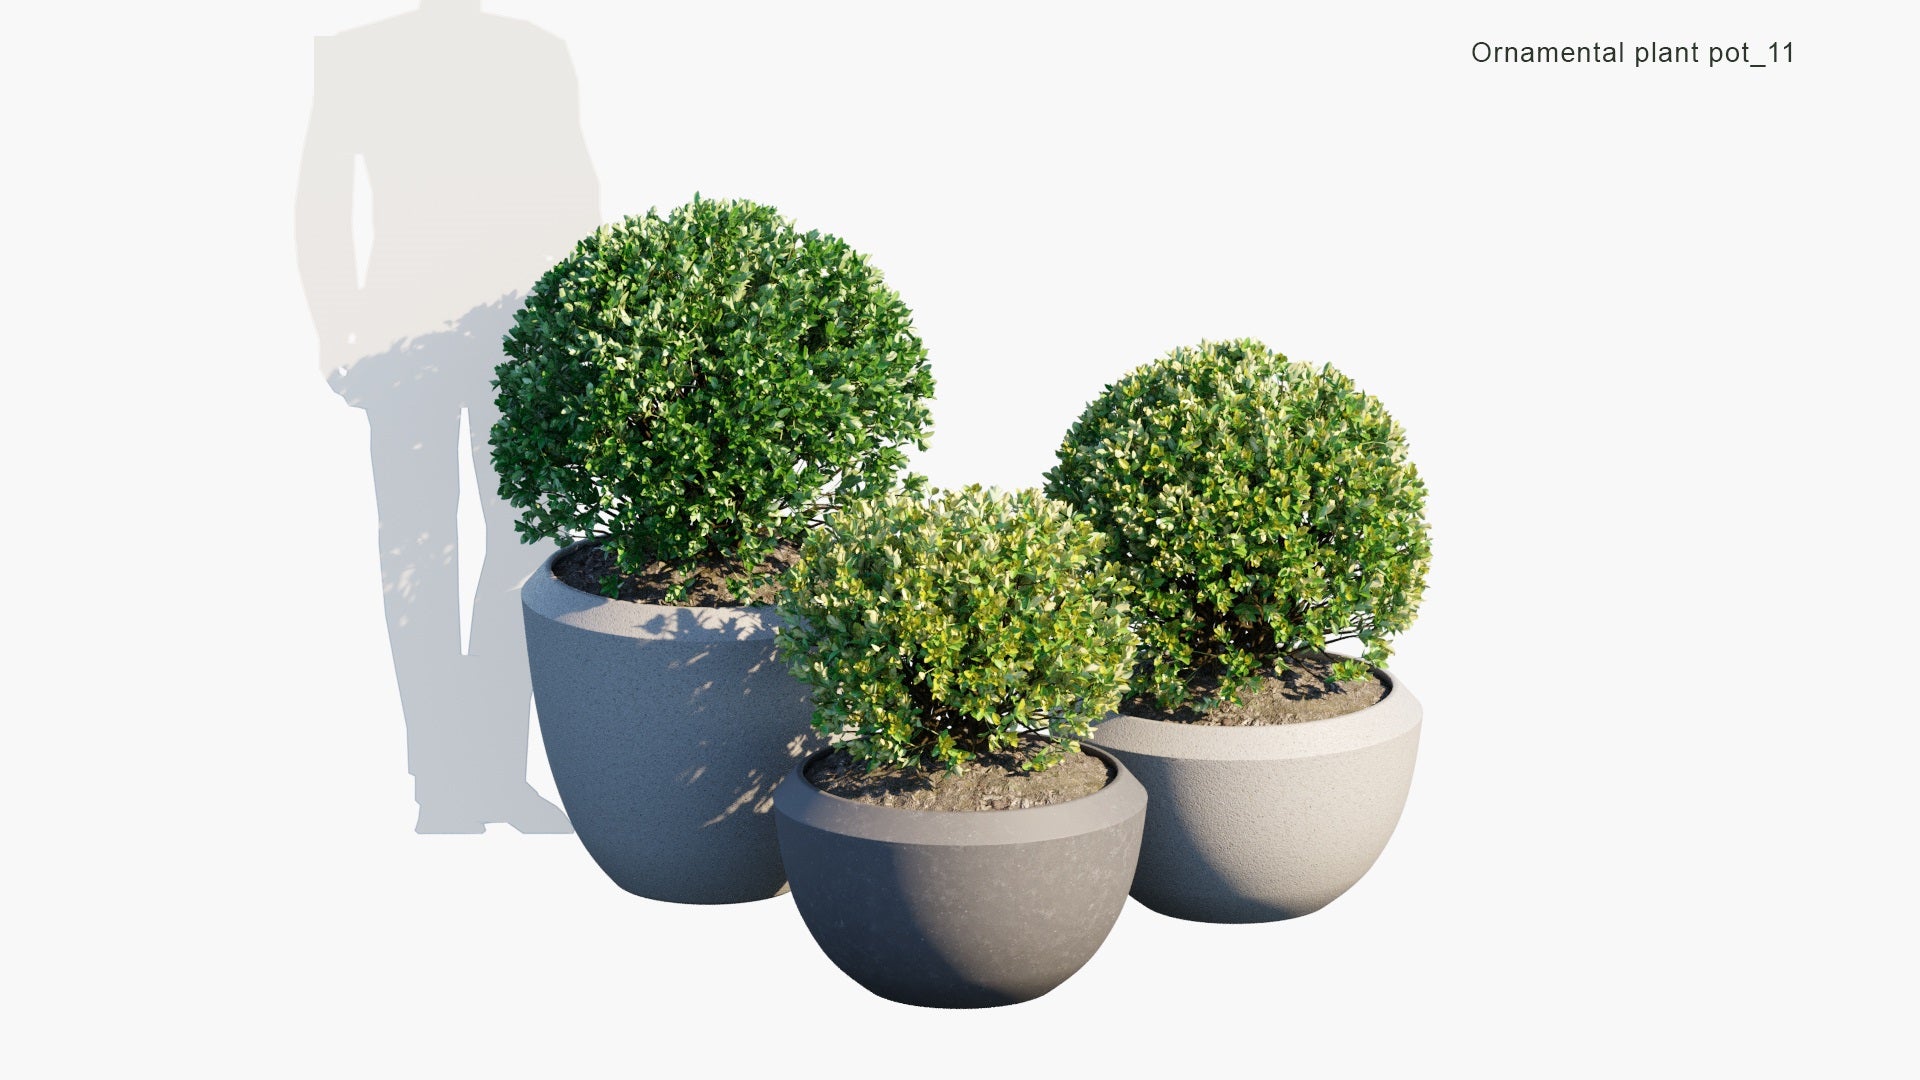 Ornamental Pot Plant 11 - Euonymus Japonicus (3D Model)